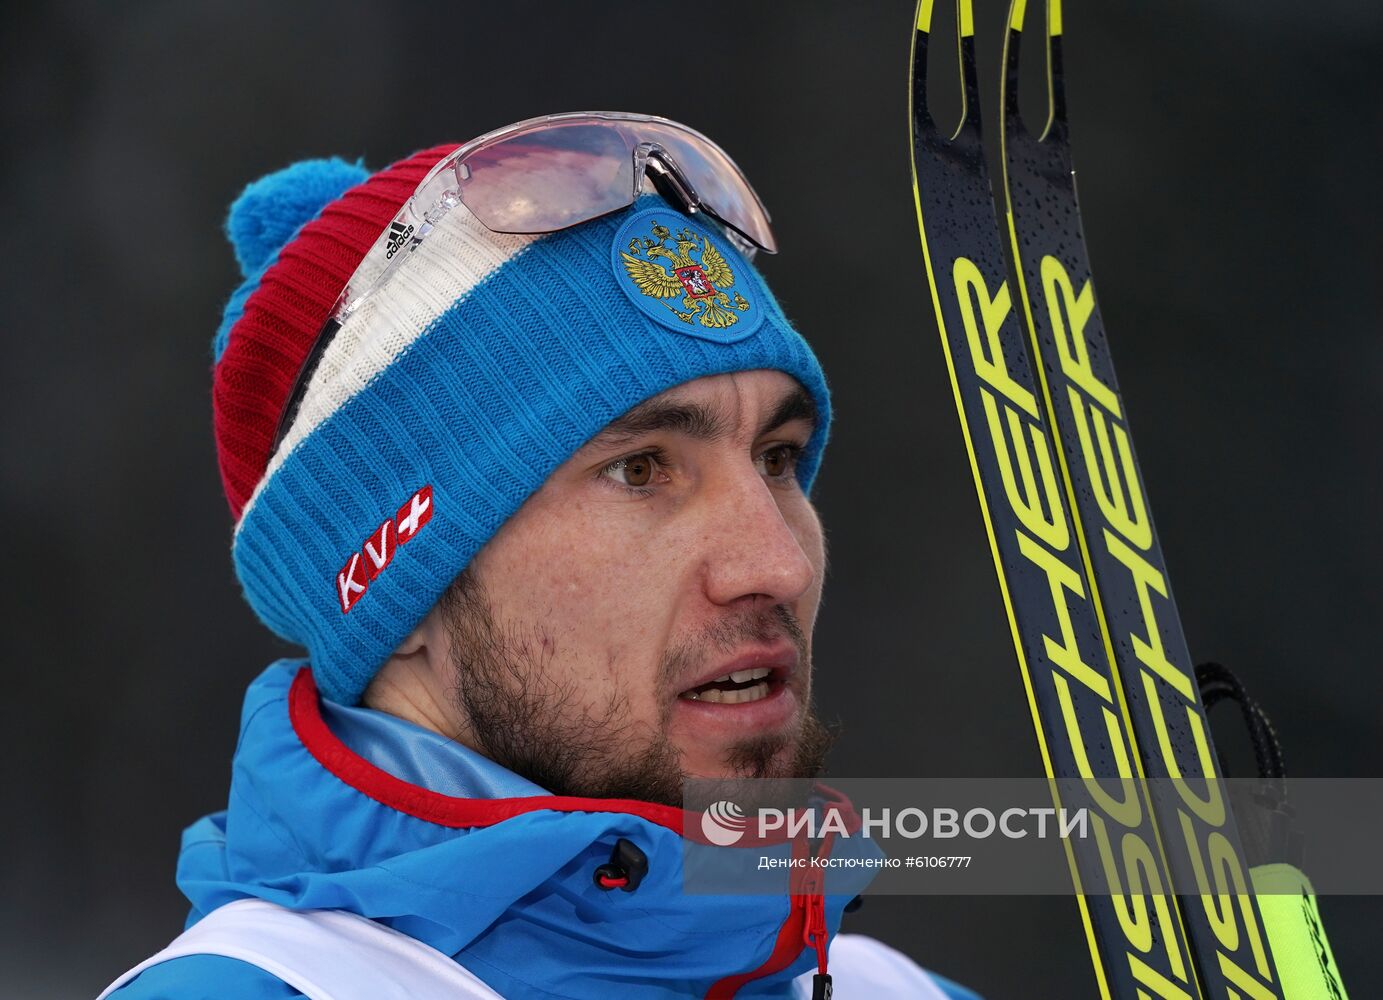 Биатлон. А. Логинов завоевал серебро в гонке преследования на II этапе КМ